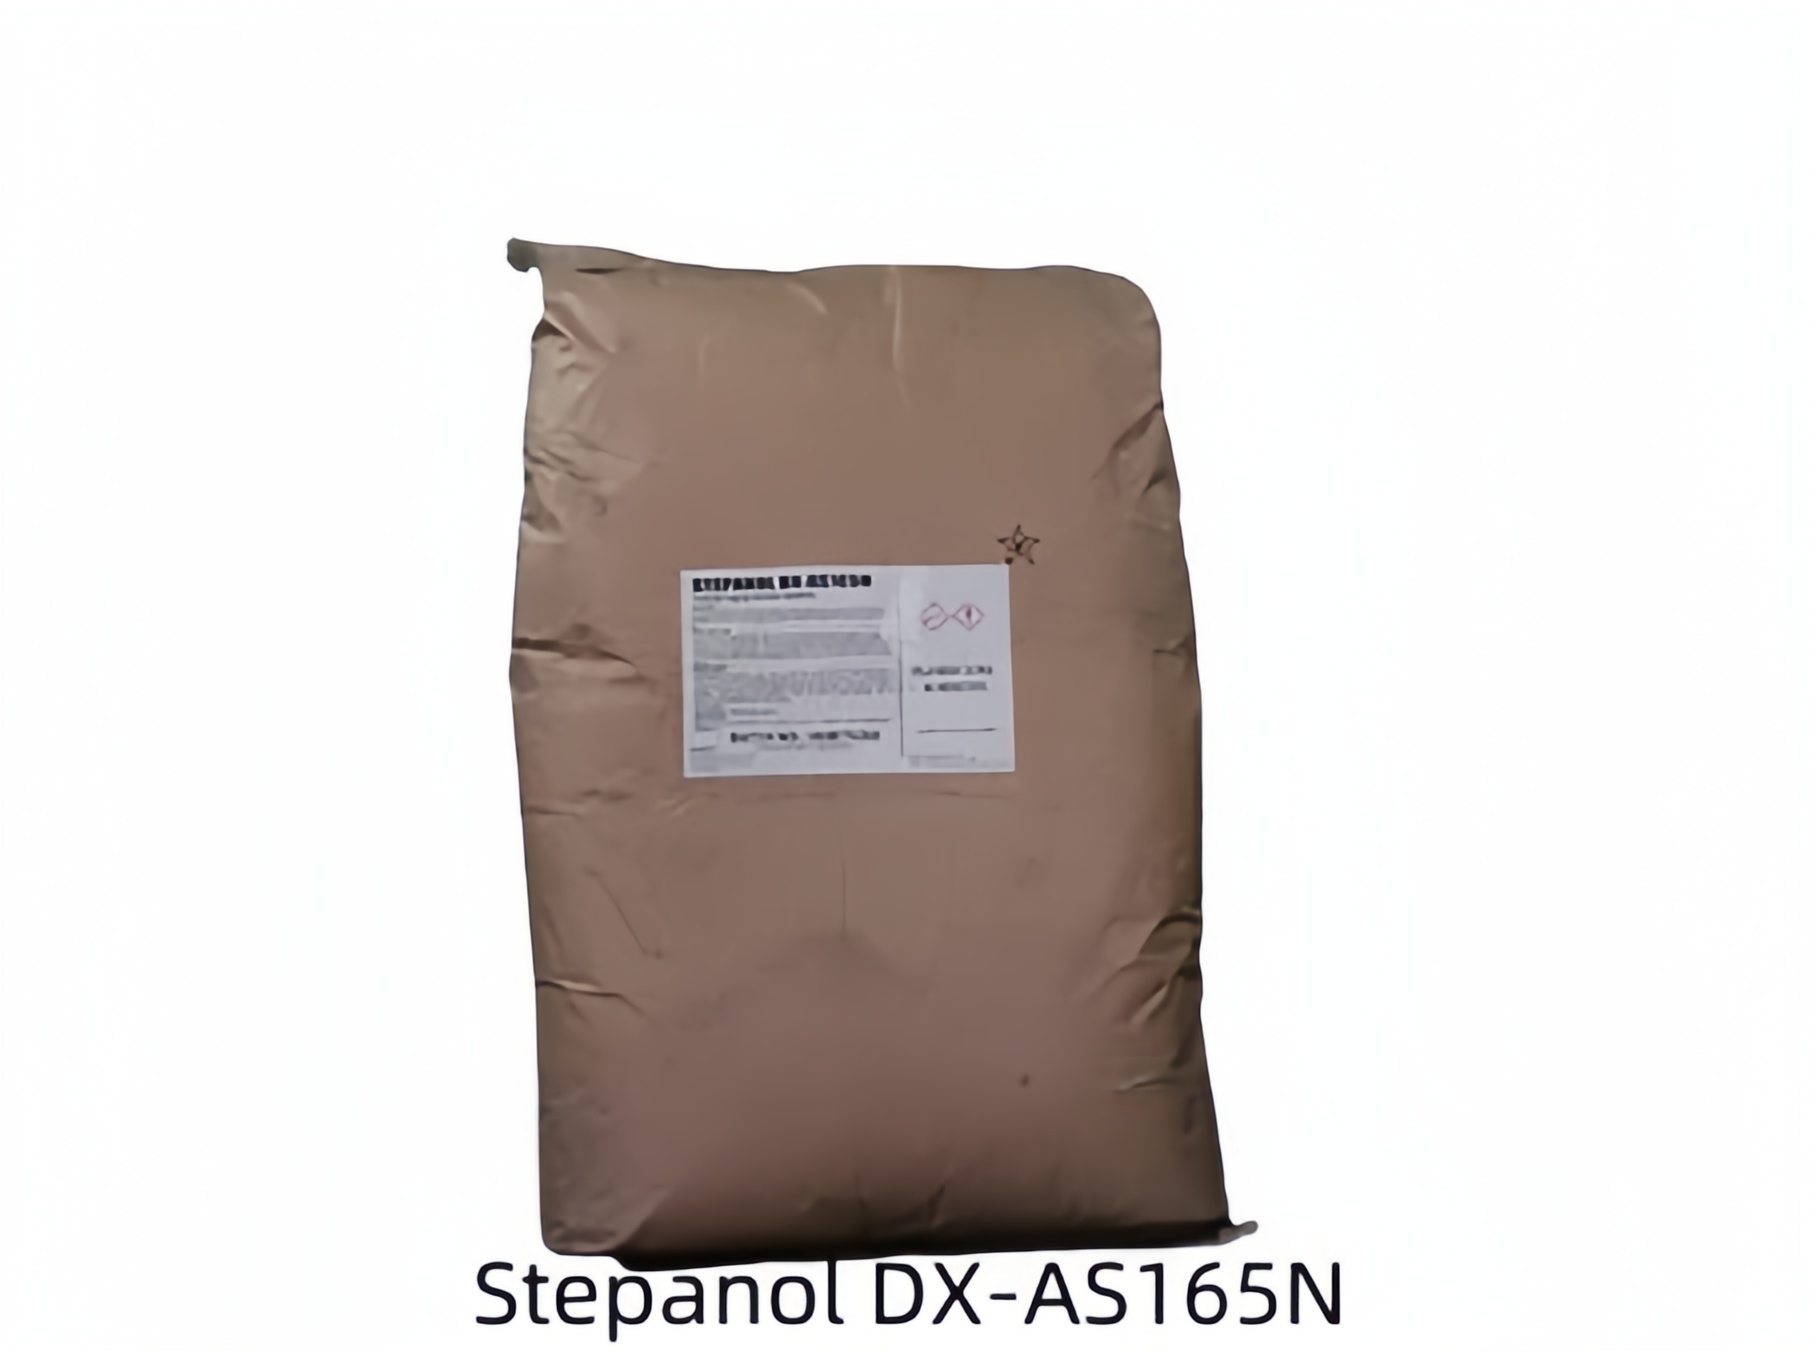 巴斯夫乳化剂DX-AS165N